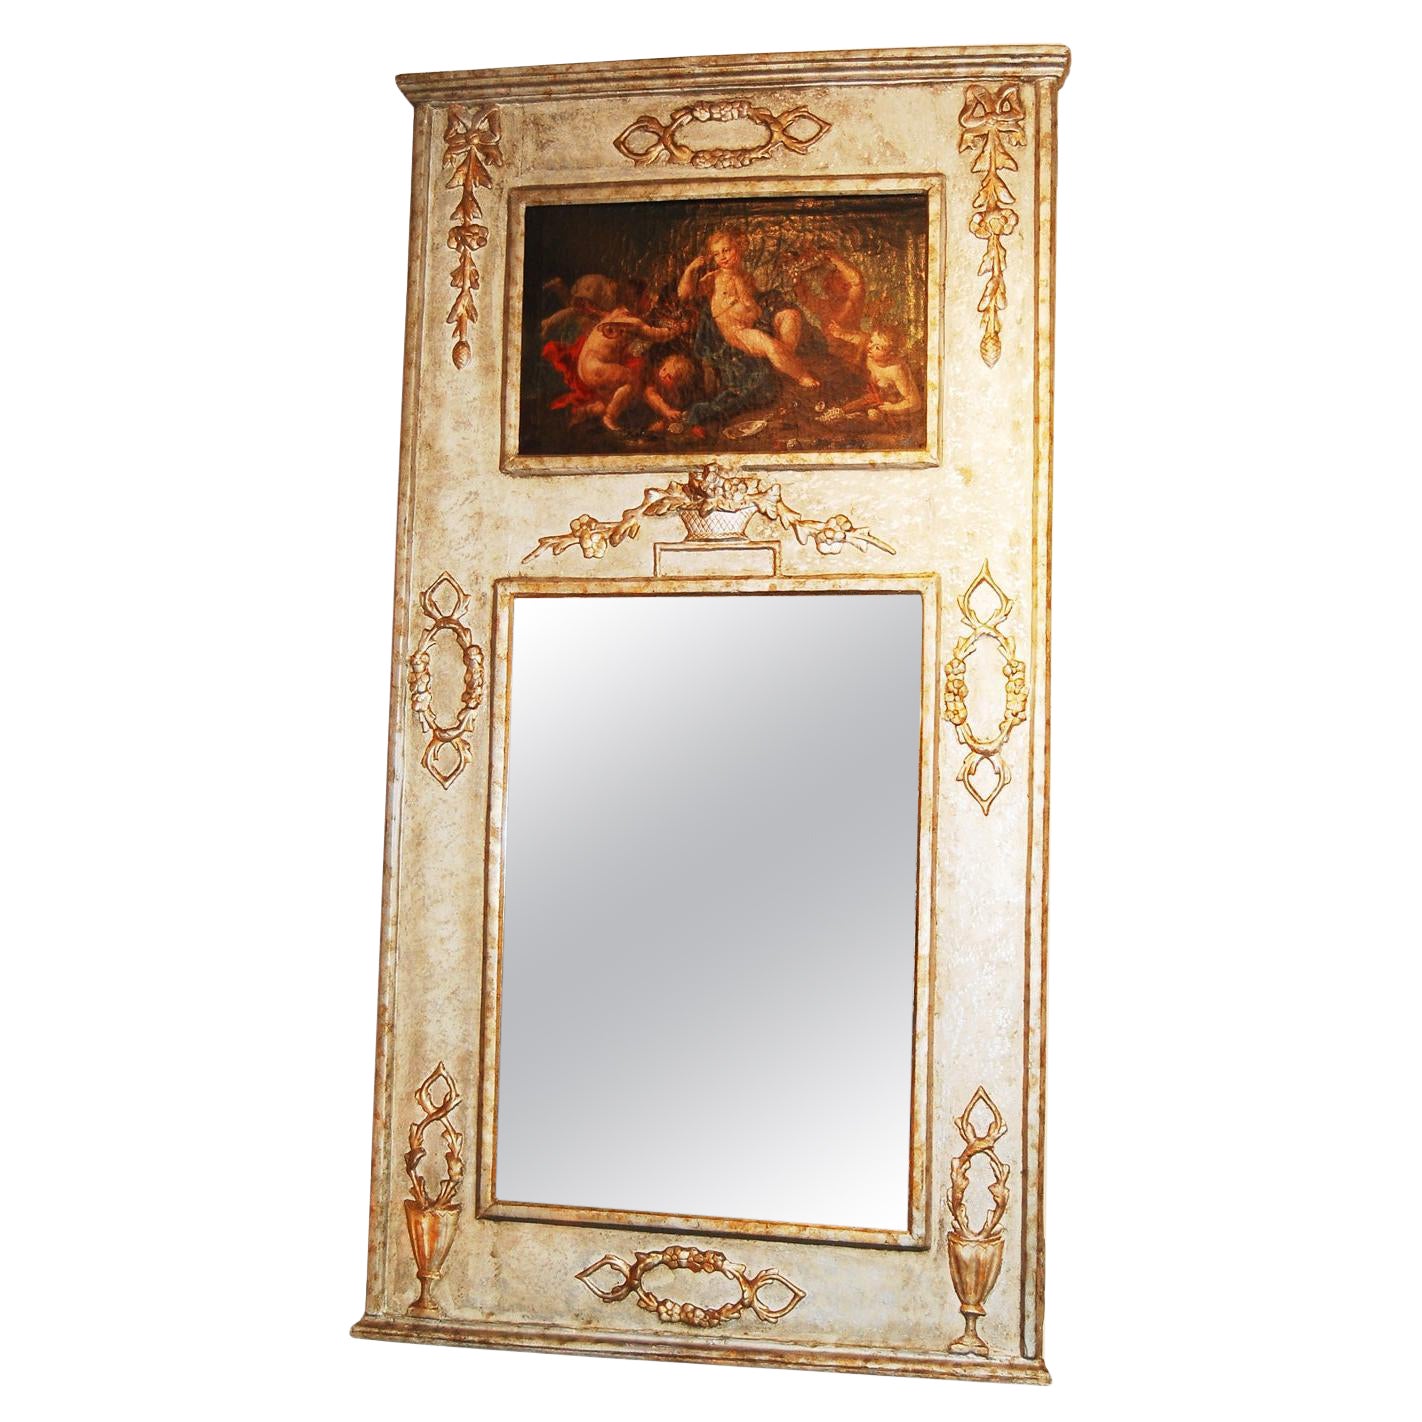 Französisch Louis XVI gemalt Trumeau Spiegel mit Classic Ölgemälde auf Leinwand